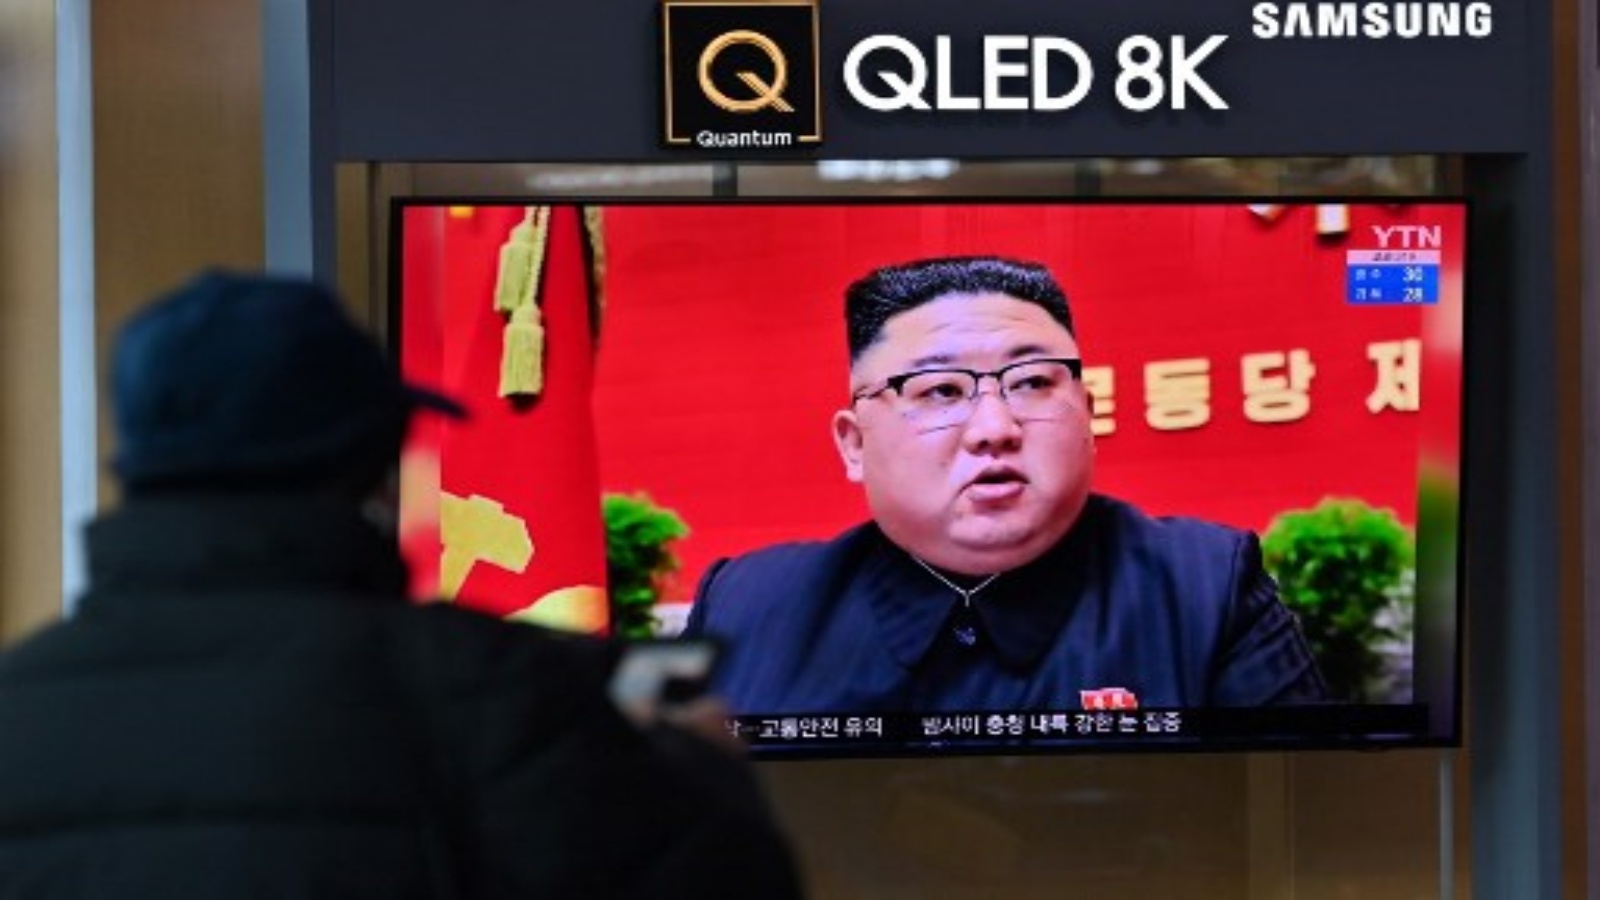 رجل يشاهد شاشة تلفزيون تعرض لقطات إخبارية للزعيم الكوري الشمالي كيم جونغ أون أثناء حضوره المؤتمر الثامن لحزب العمال الحاكم الذي عقد في بيونغ يانغ ، في محطة سكة حديد في سيول في 6 يناير 2021